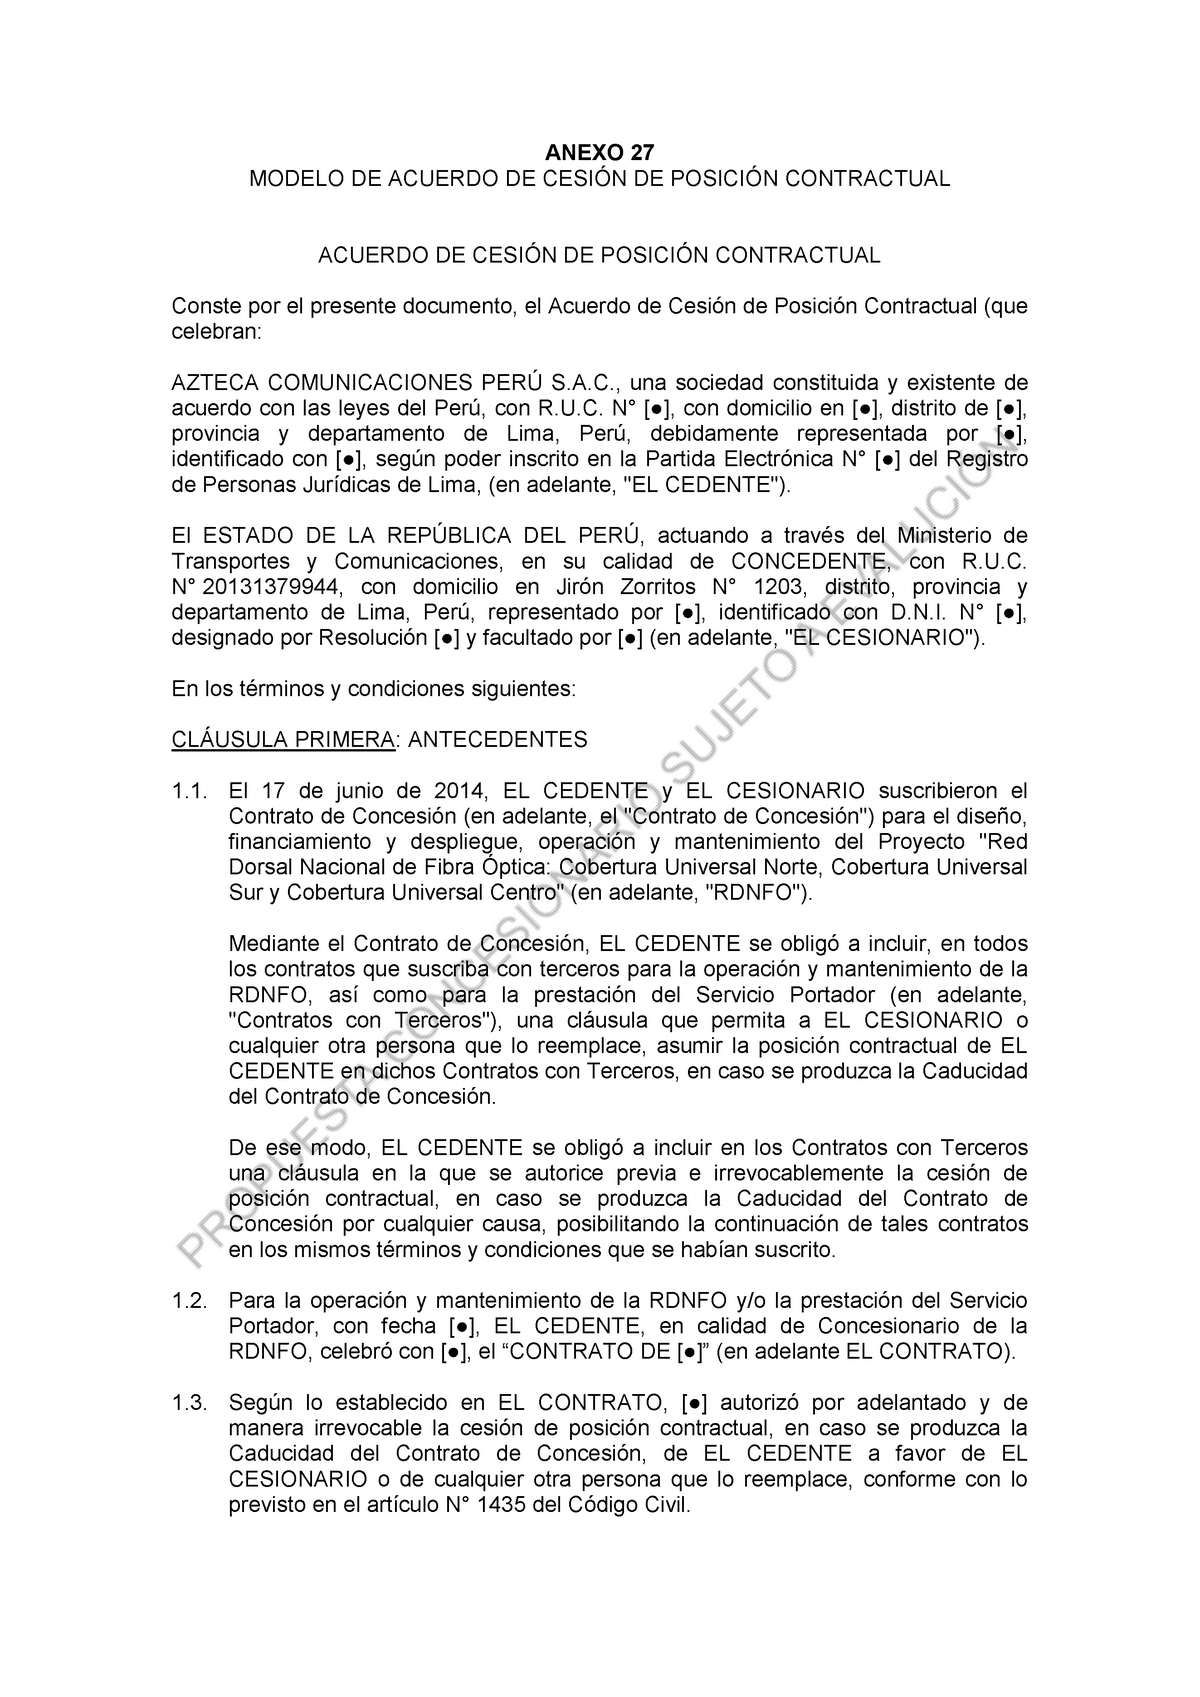 Modelo DE Contrato DE Cesion - ANEXO 27 MODELO DE ACUERDO DE CESIÓN DE  POSICIÓN CONTRACTUAL ACUERDO - Studocu